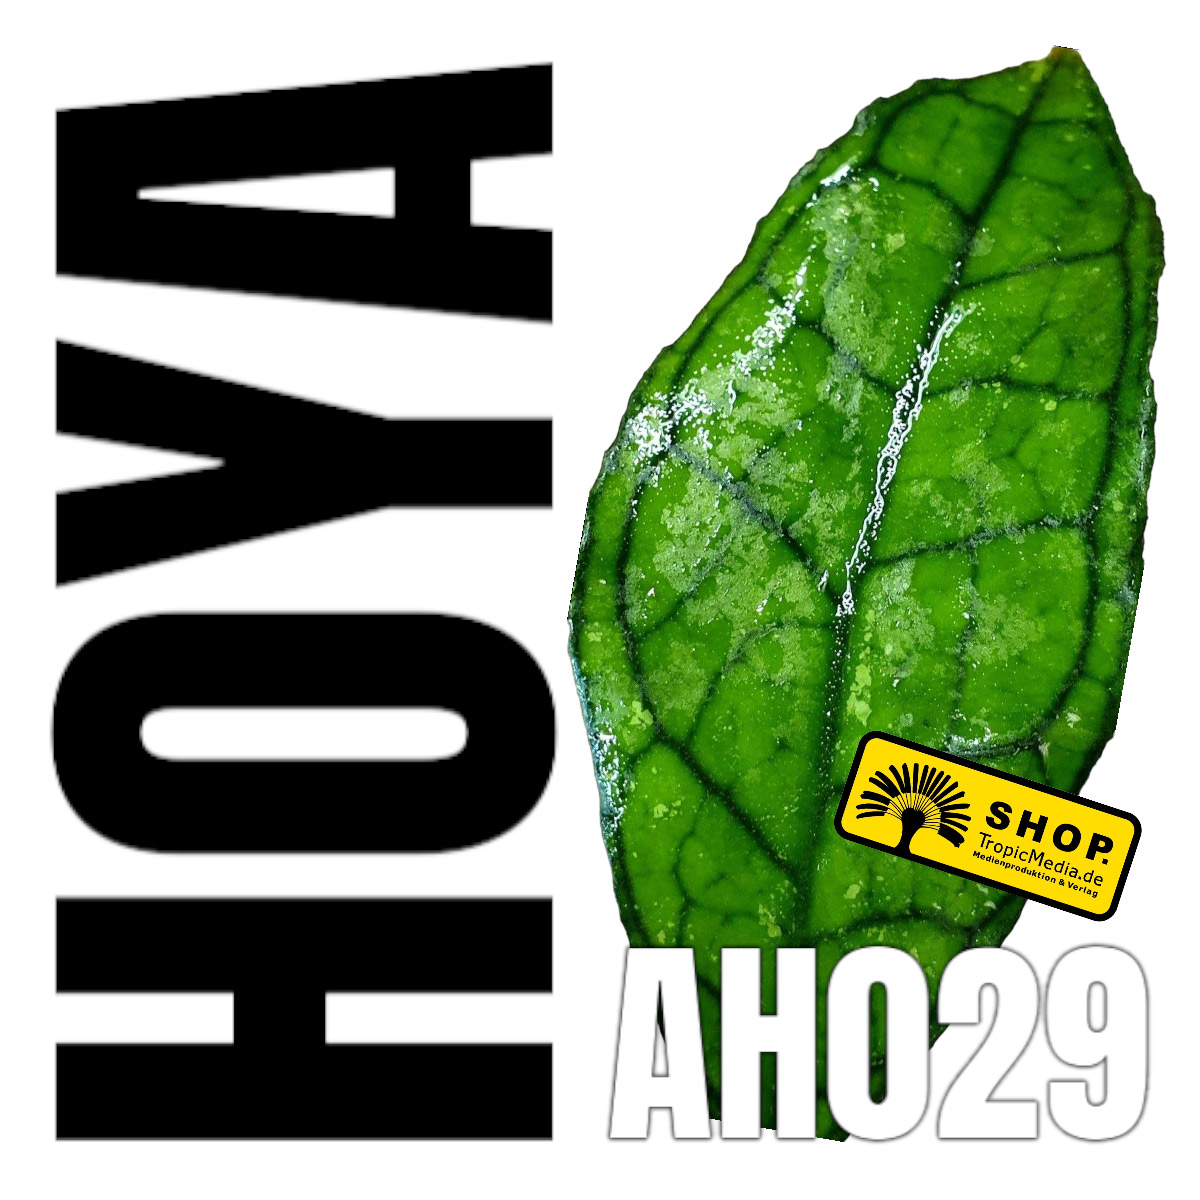 Hoya cv. AH029